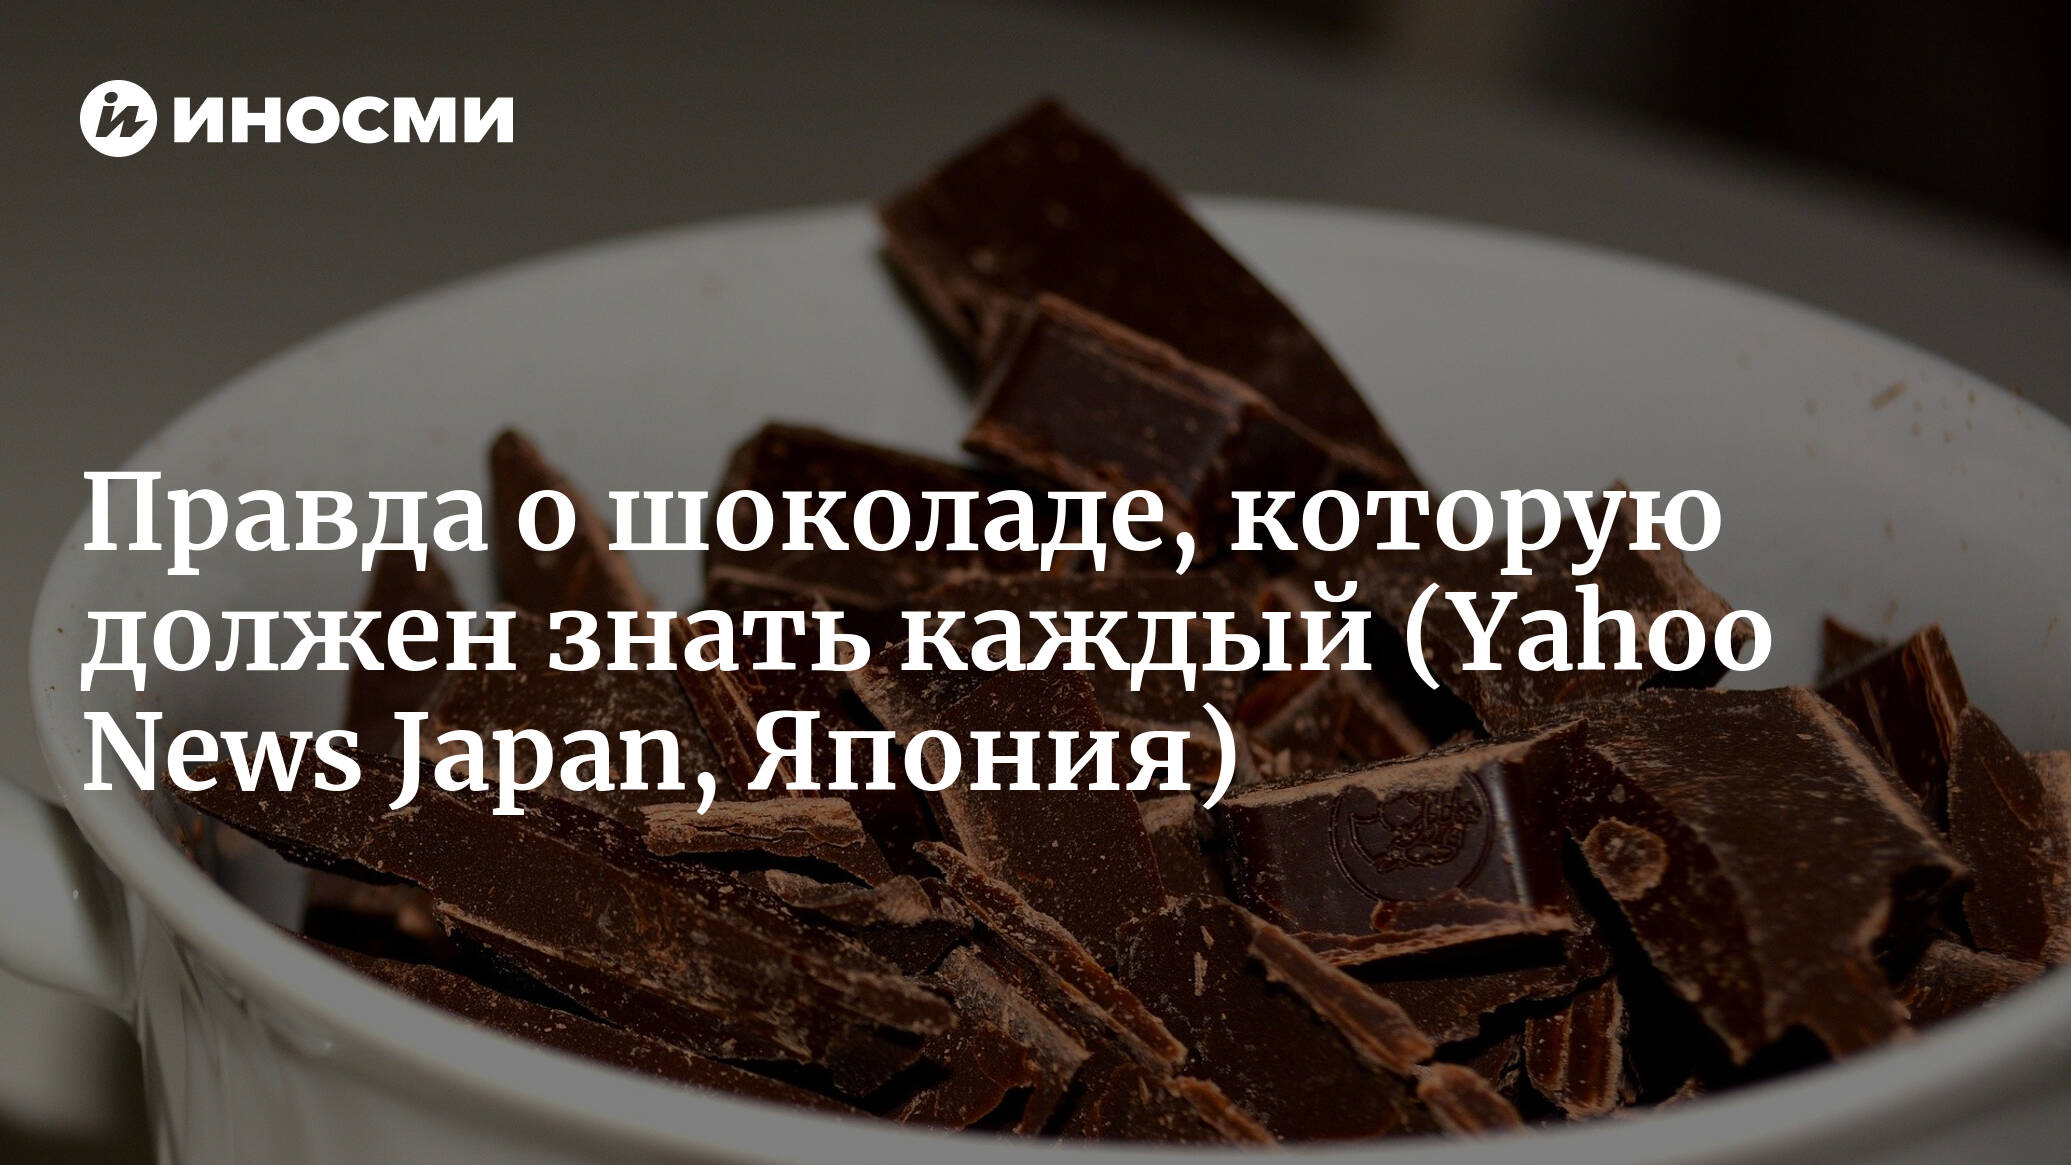 Шоколад и здоровье. Вся правда о шоколаде. Интересные факты о шоколаде. Ешьте на здоровье шоколад.